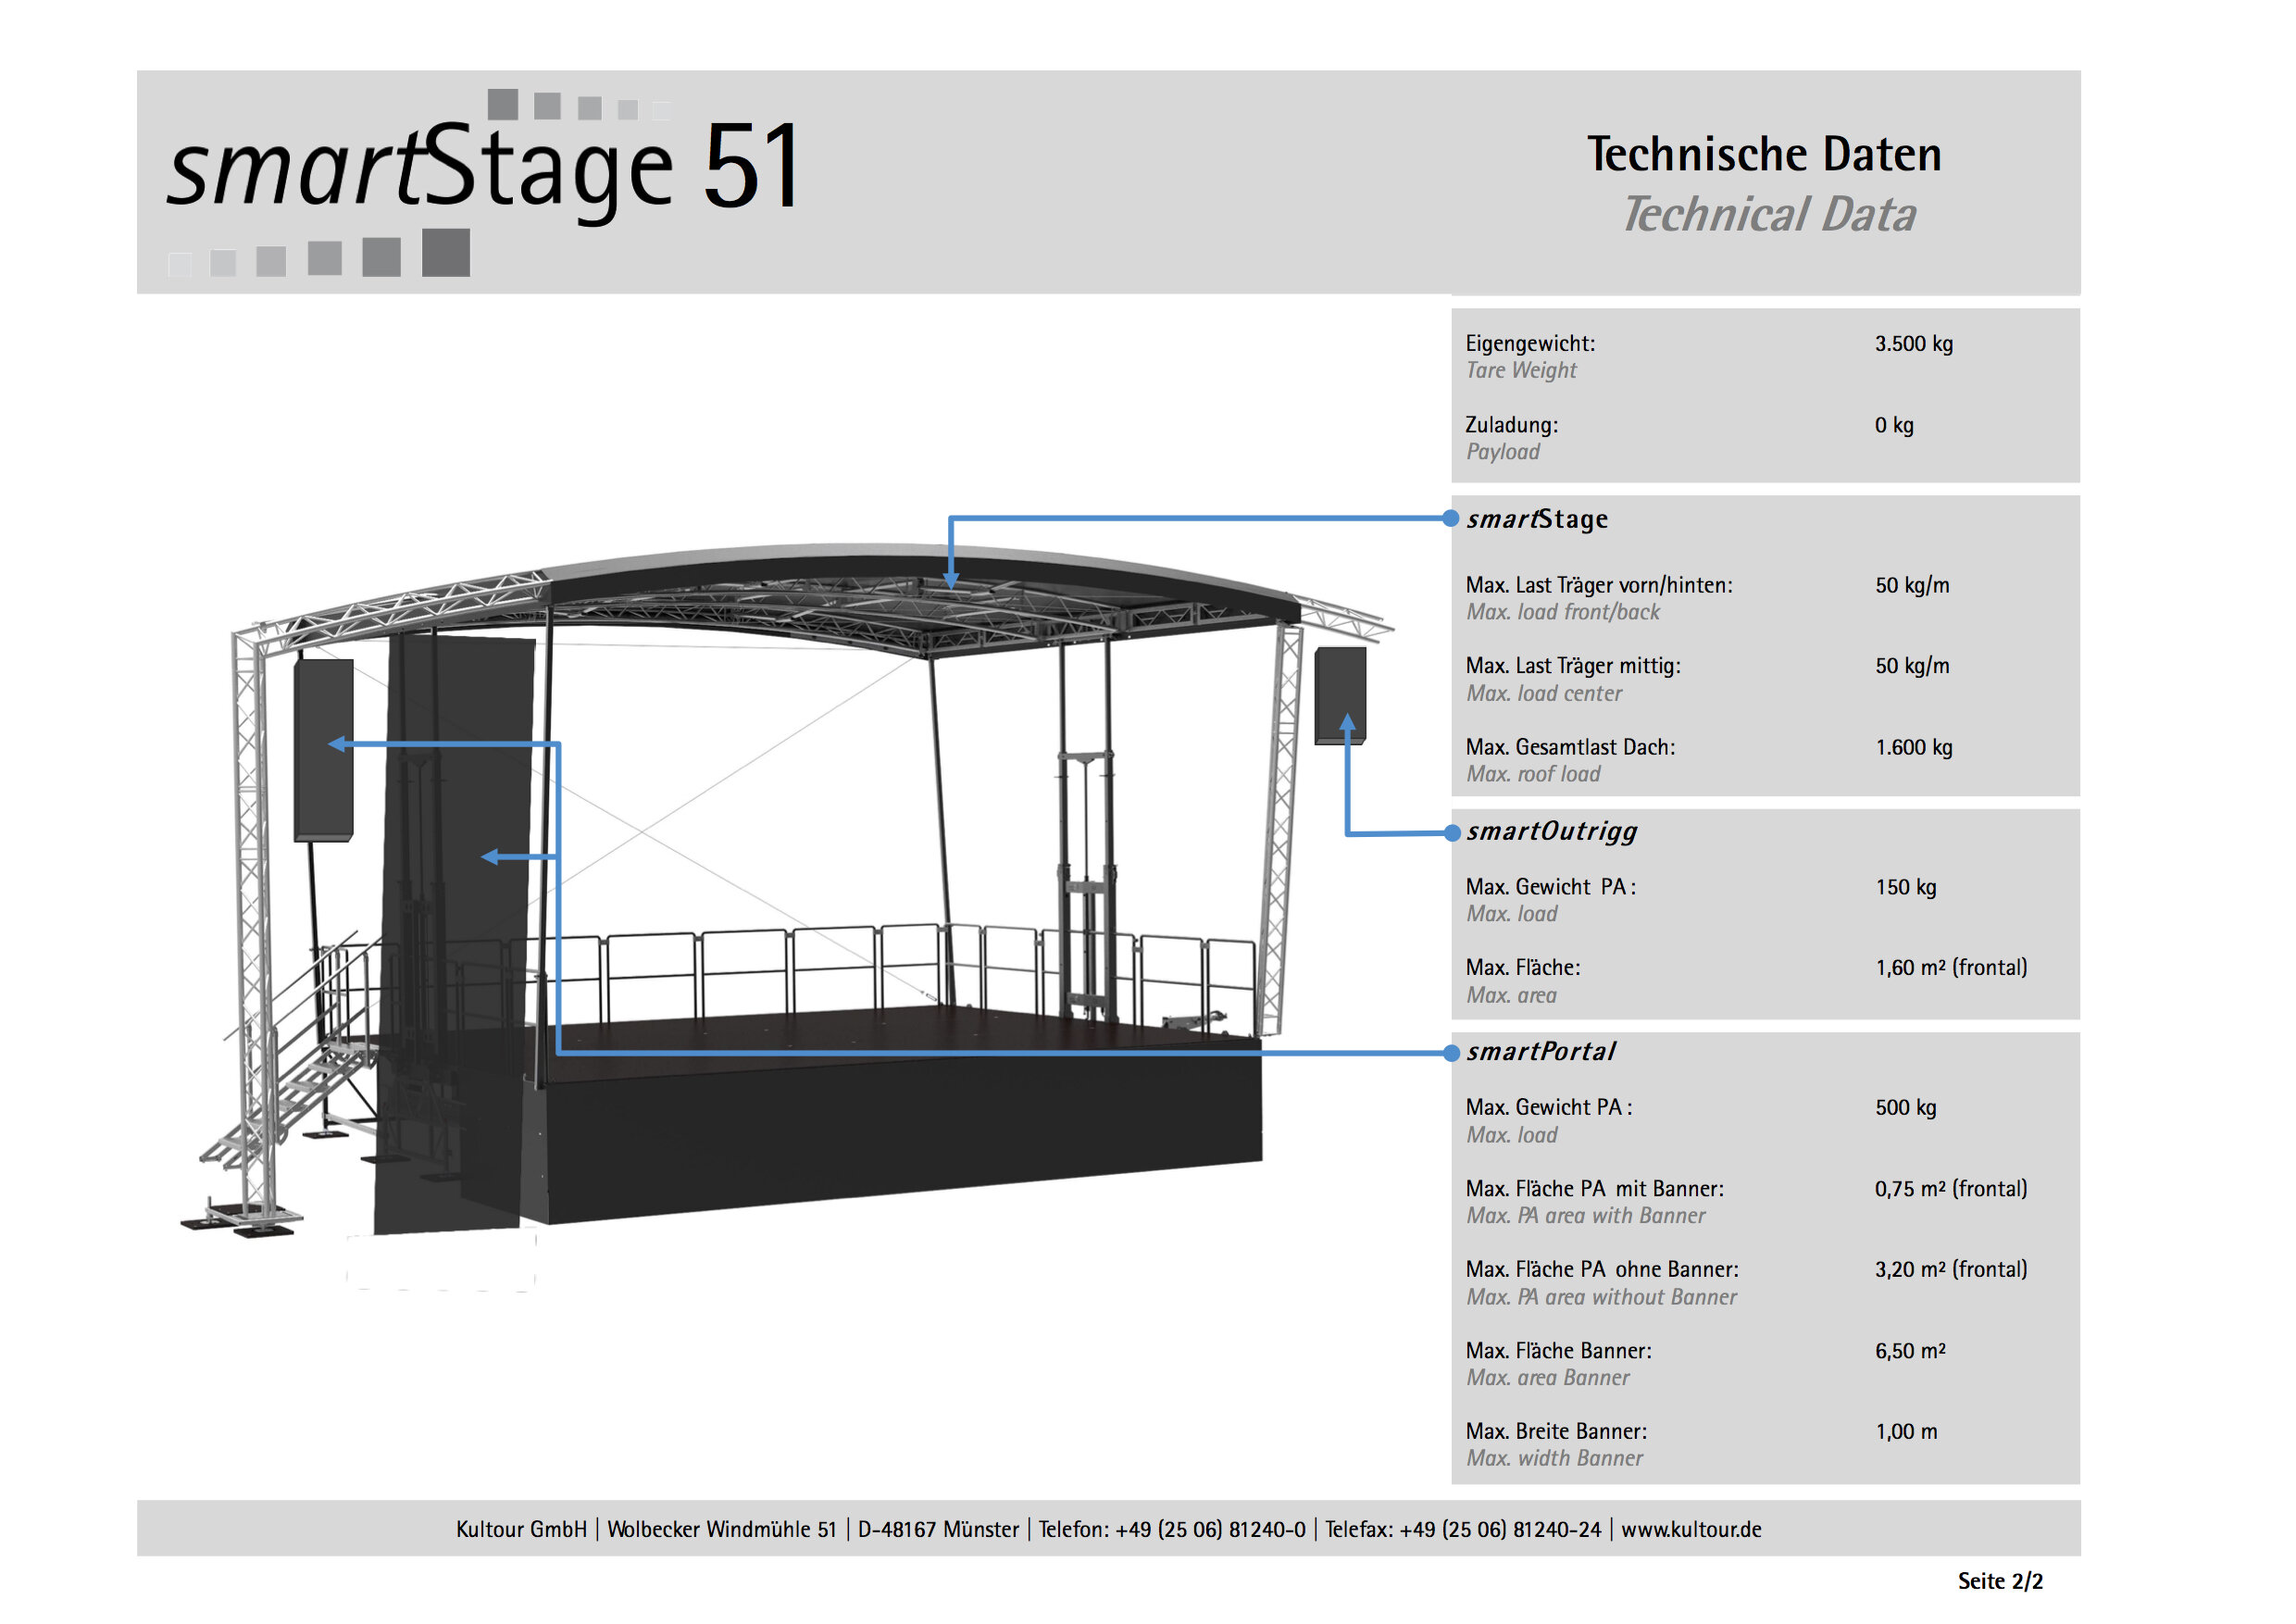 smartStage 51 - Technische Daten 2:2.jpg